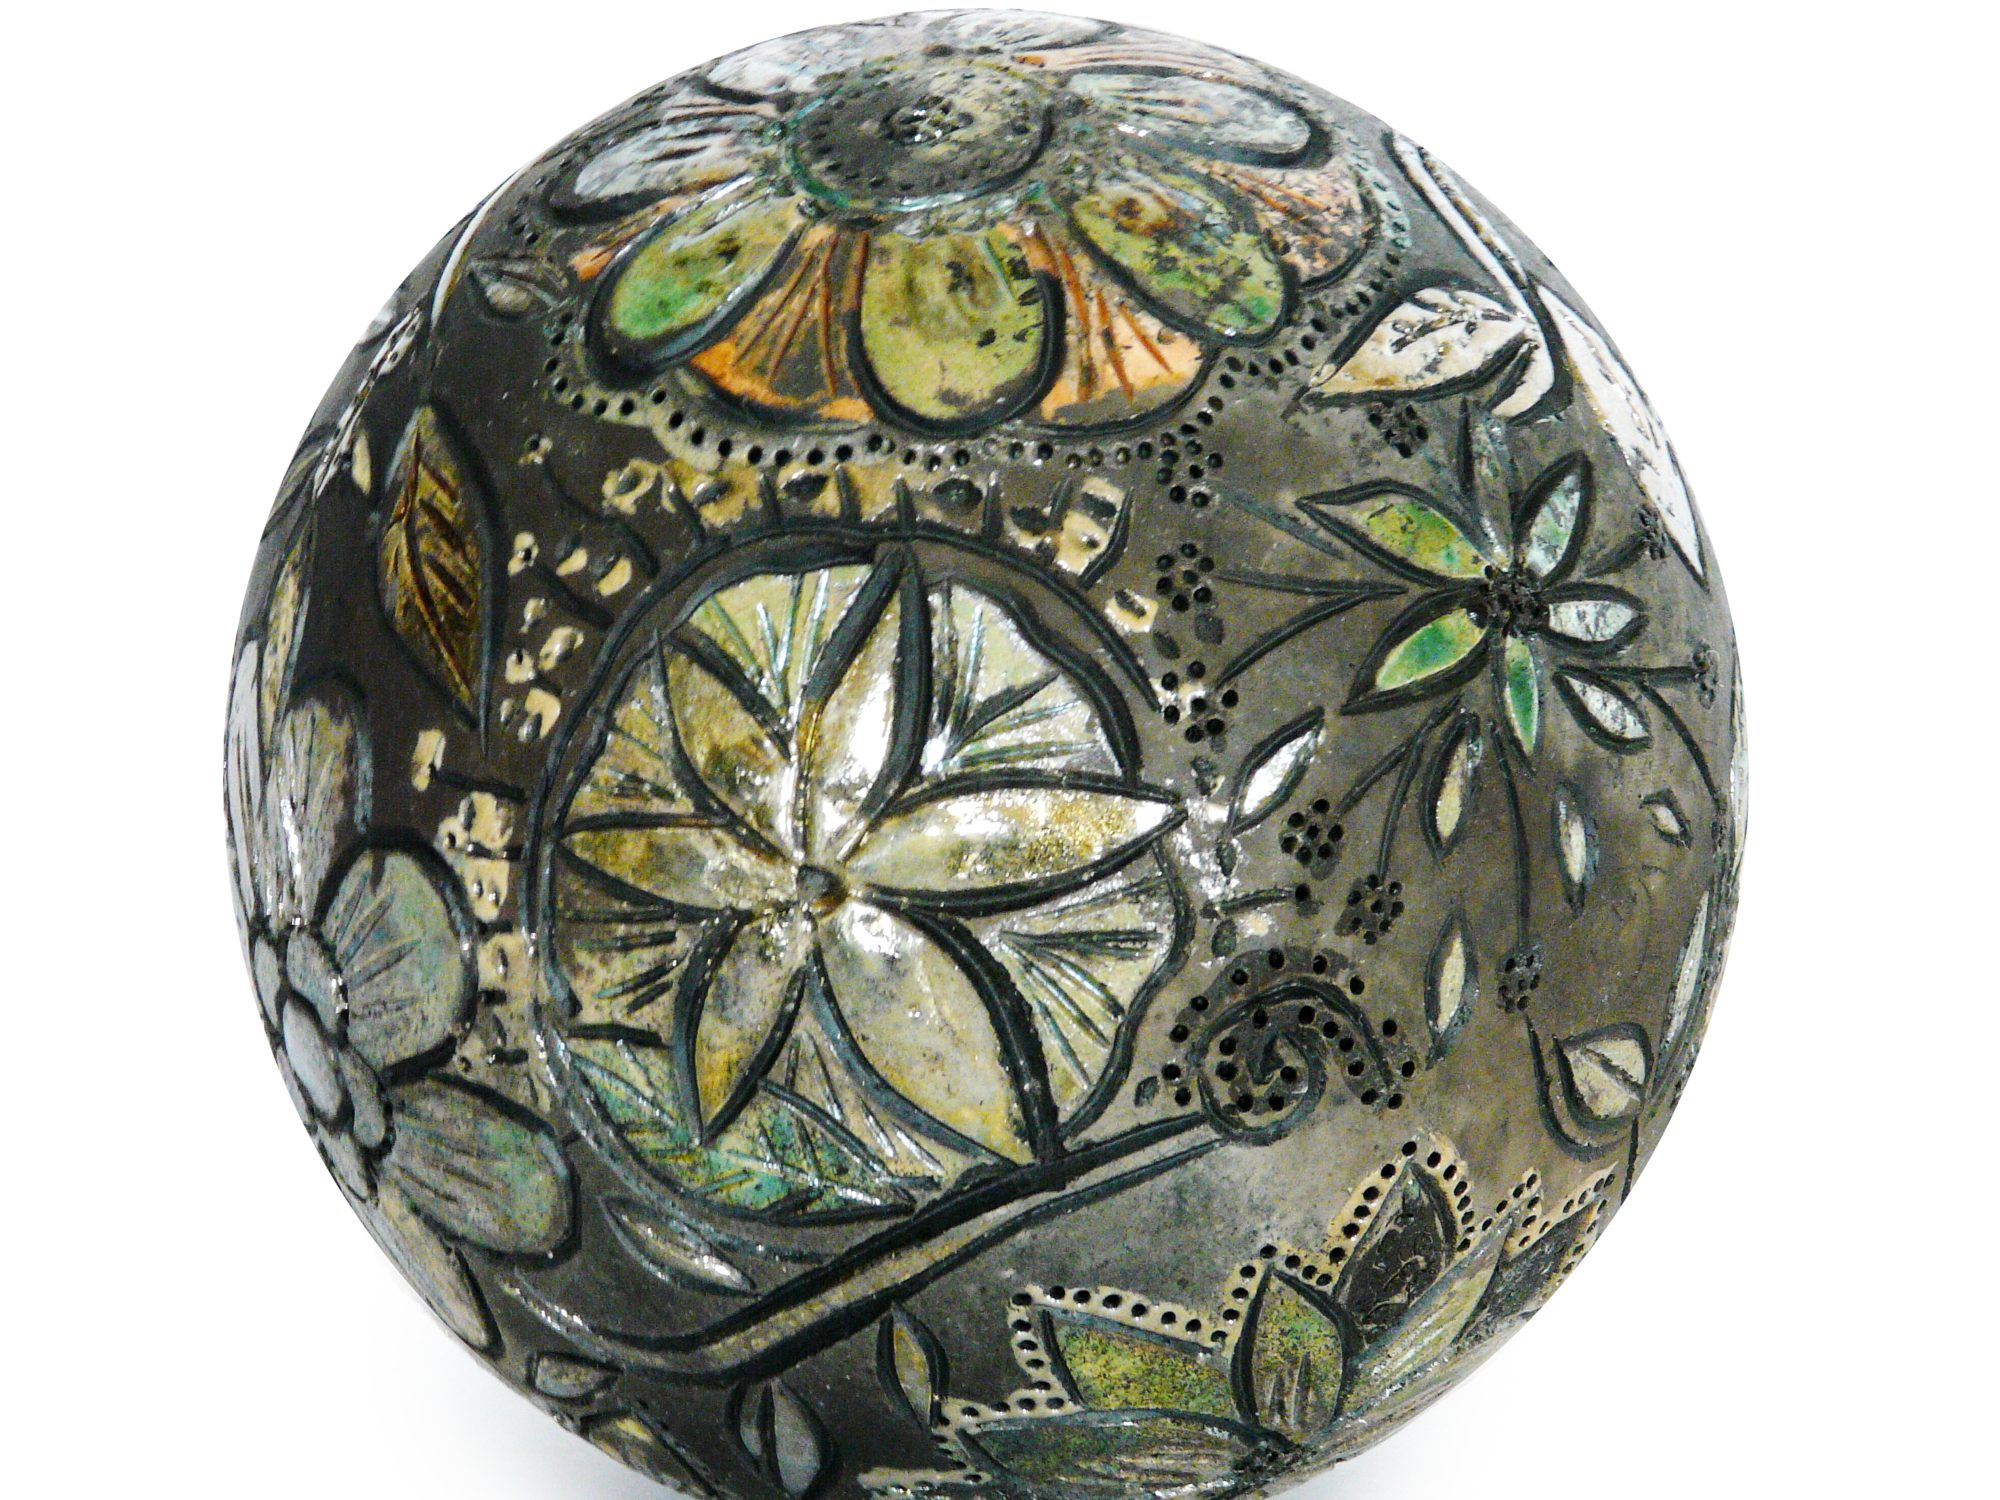 Moon d’automne - ø : 18 CM - Grès - Raku -Gravure - Nitrate d’argent - Oxydes - Sculptures céramique de Florence Lemiegre